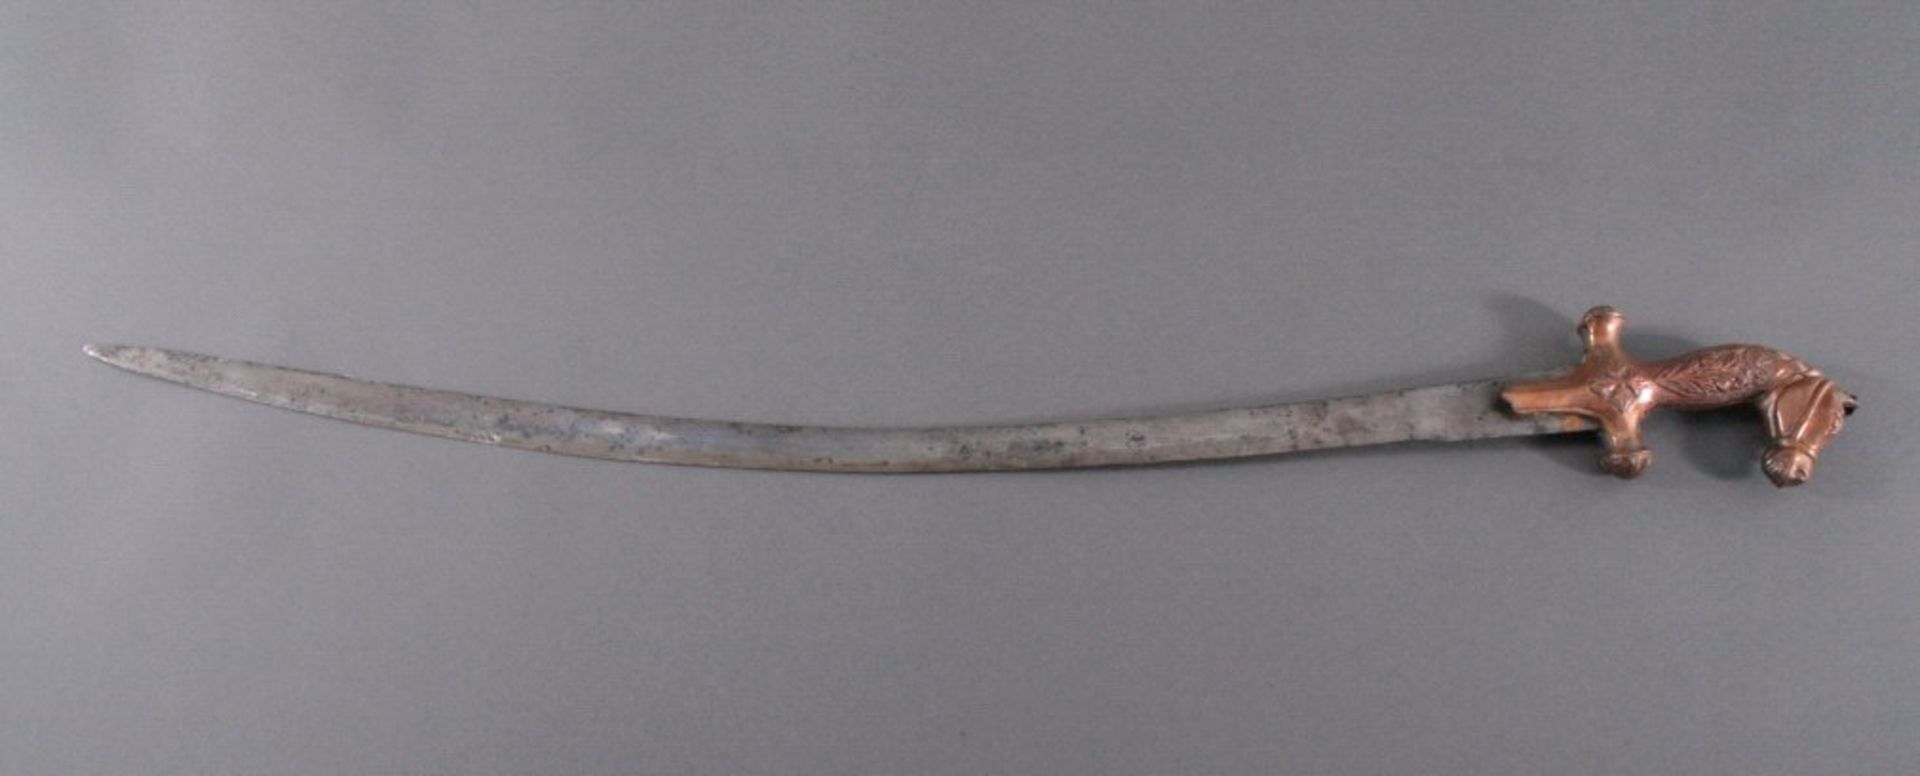 Indisches Schwert um 1900, (Talwar)Klinge aus geschmiedetem Eisen, Kupfergriff in Form